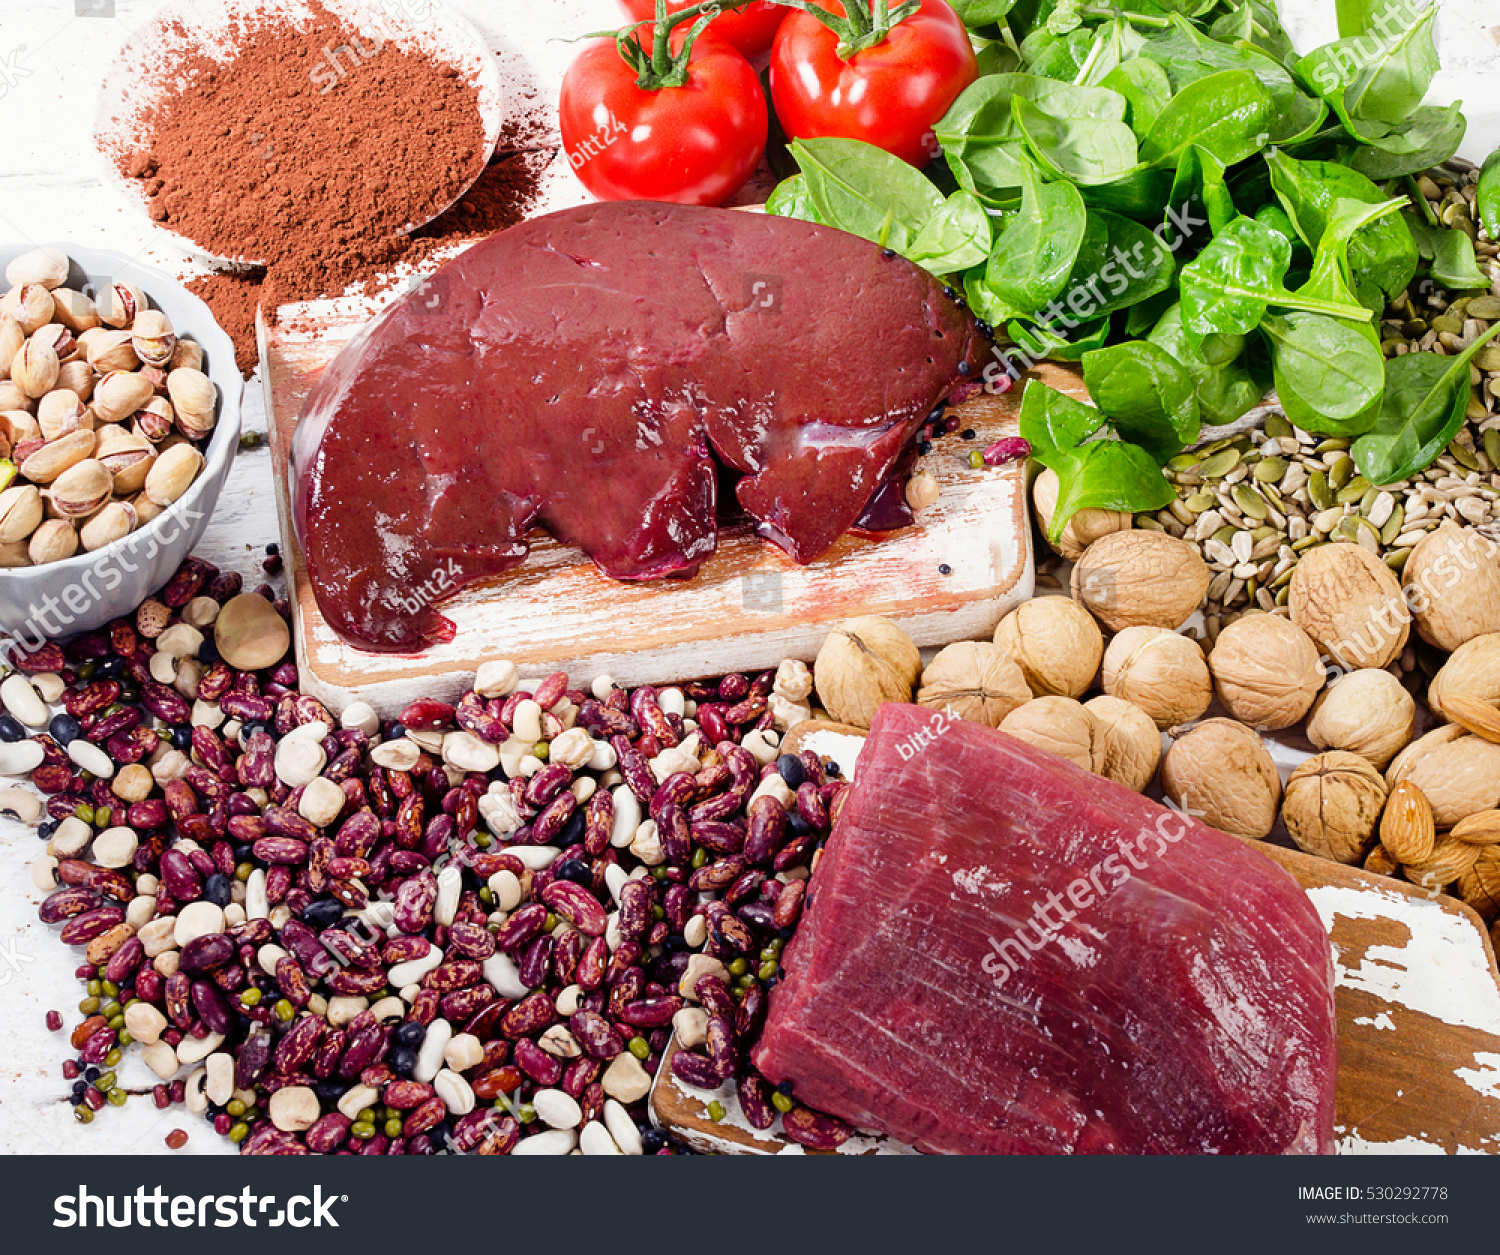 Поднять гемоглобин продуктами мужчине. Железо в продуктах. Повышенное железо в пище. Еда для повышения железа. Блюда при анемии.